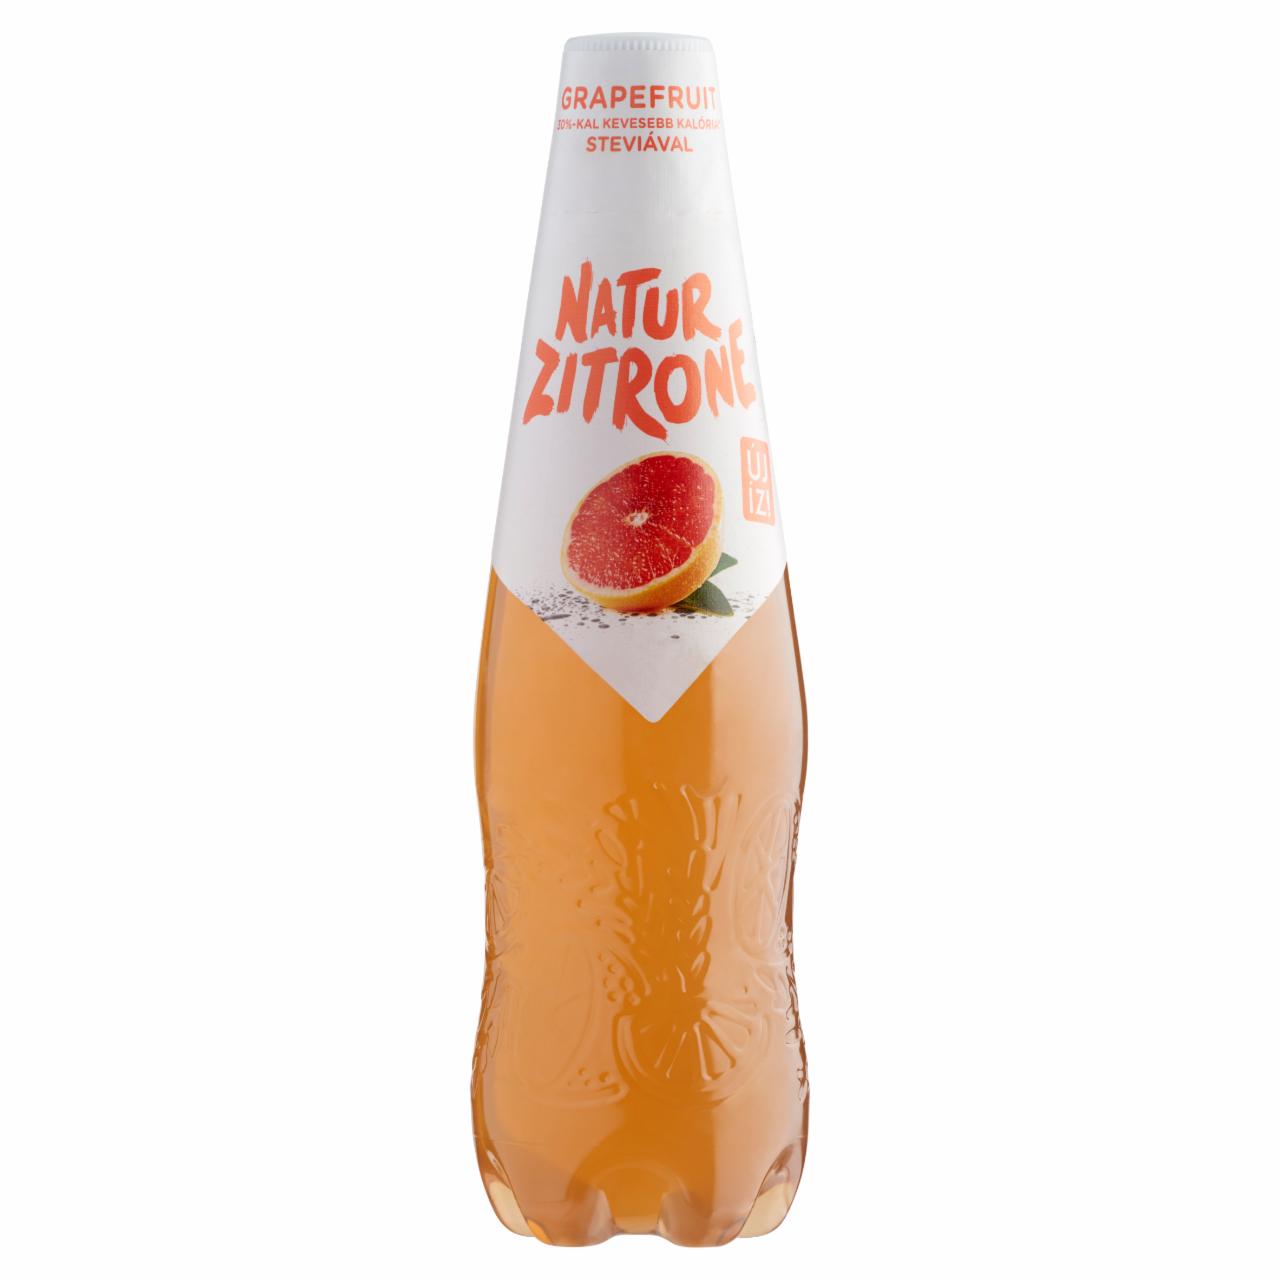 Képek - Natur Zitrone alkoholmentes, grapefruit ízű szénsavas ital steviával 0,5 l PET palack